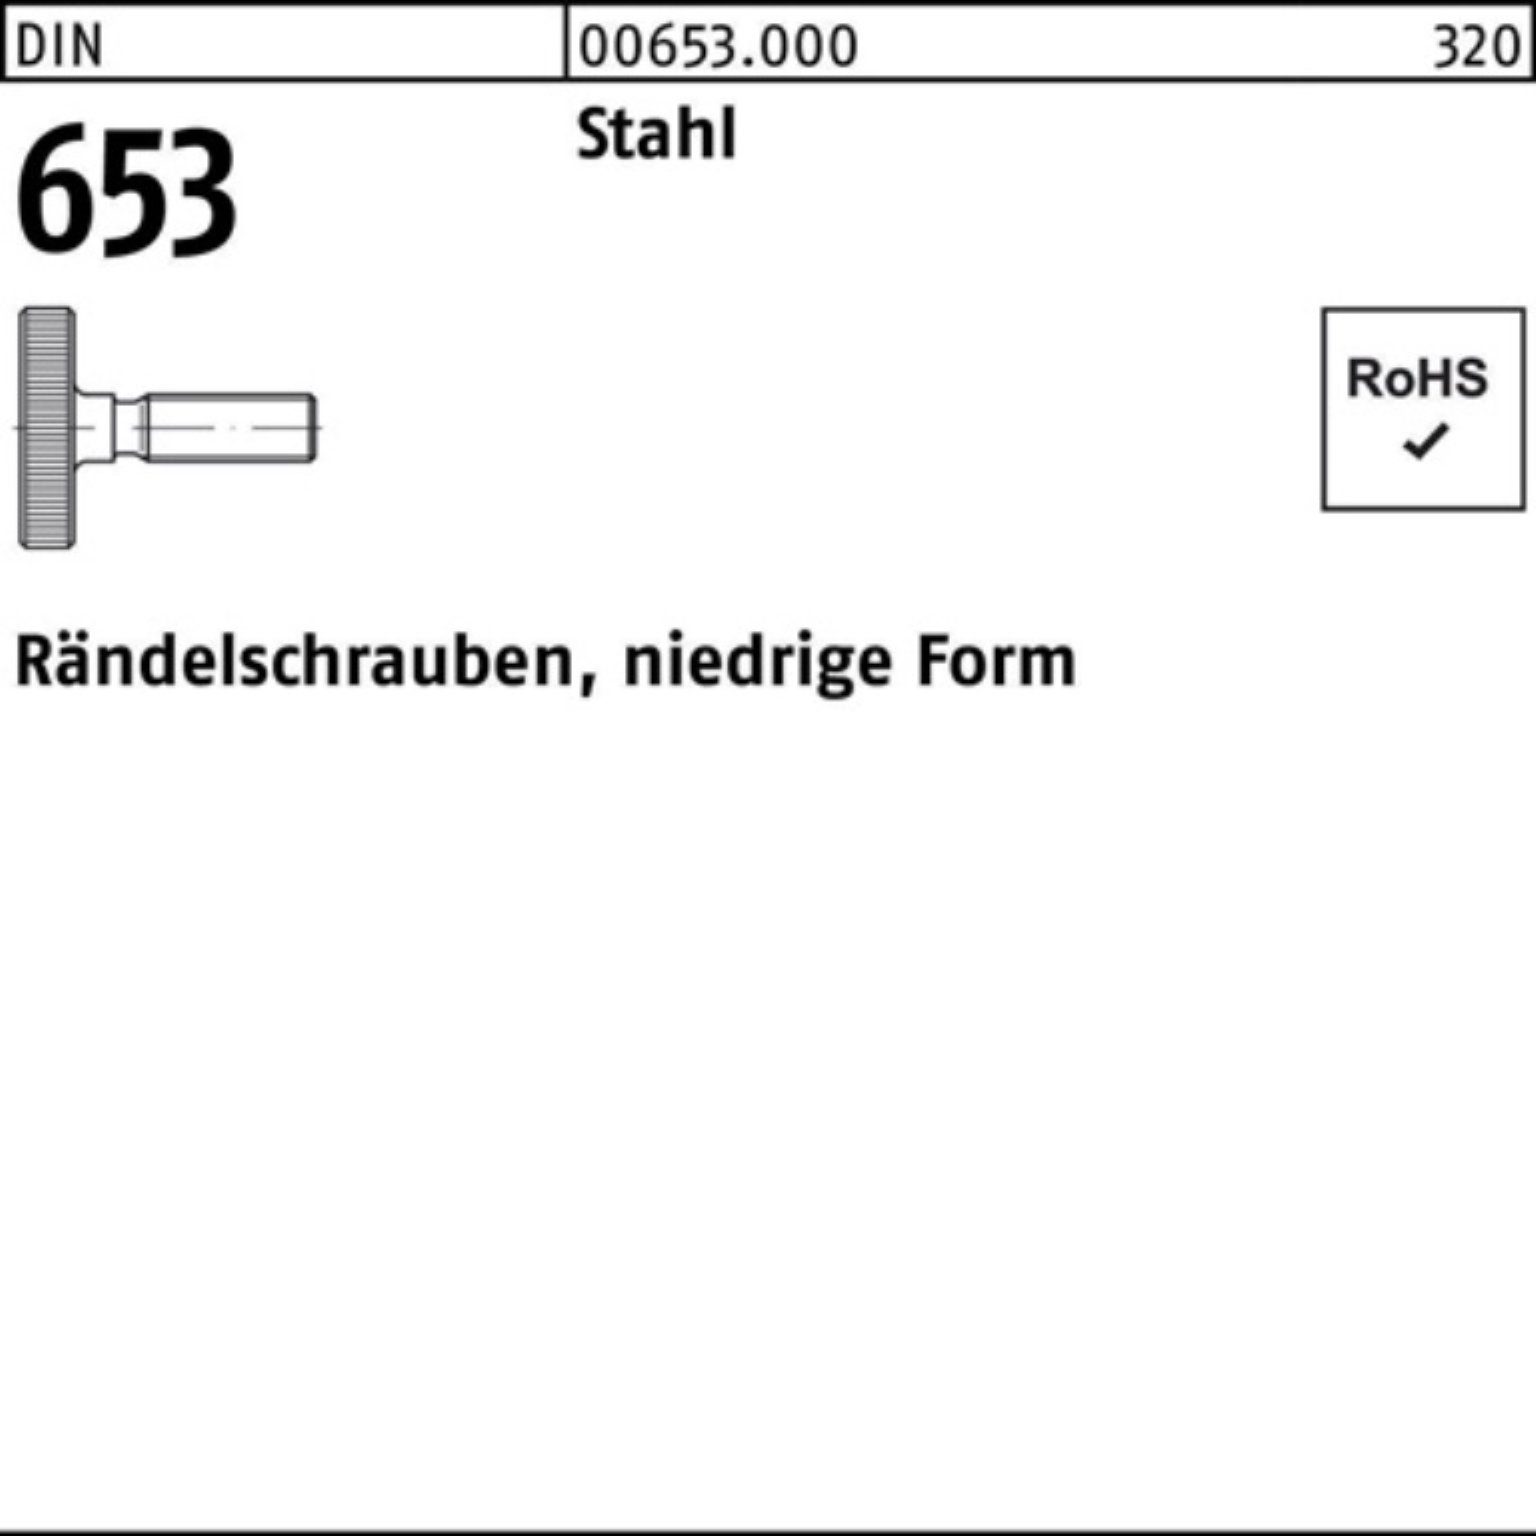 Reyher Schraube 100er Pack Rändelschraube DIN 653 niedrige FormM10x 50 Stahl 10 Stüc